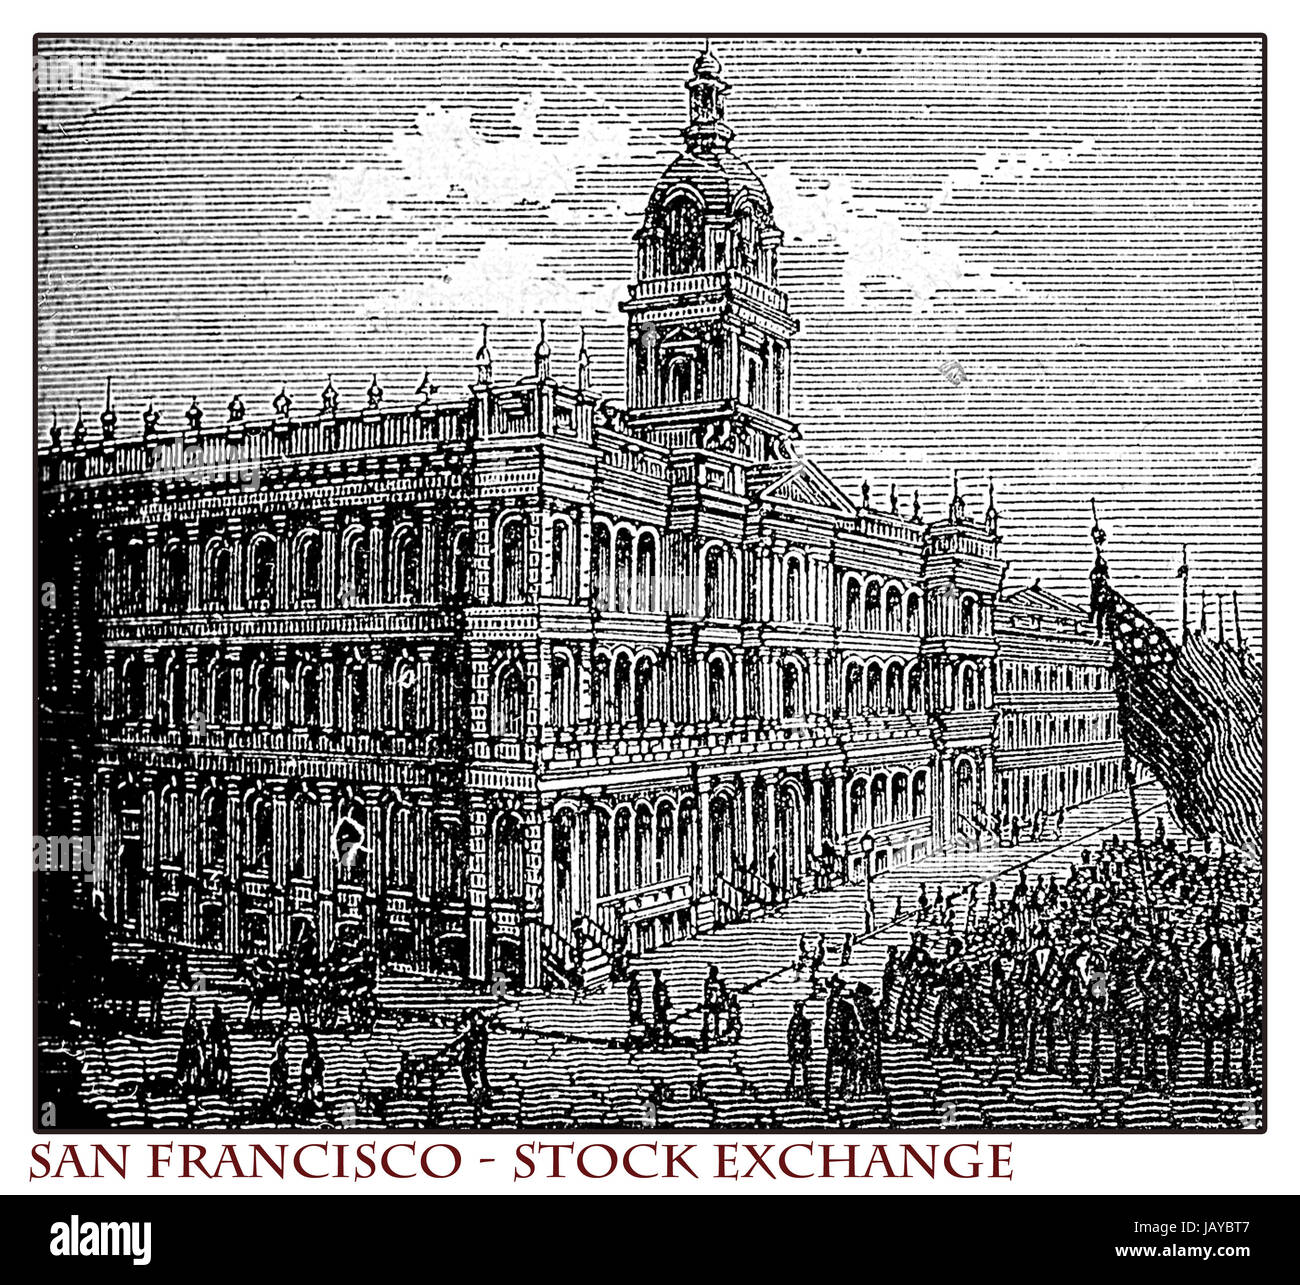 Kalifornien, San Francisco Stock Exchange building, Kupferstich aus dem Jahr 1873 vor dem Erdbeben 1906, das mehr als 80 % der Stadt zerstört Stockfoto